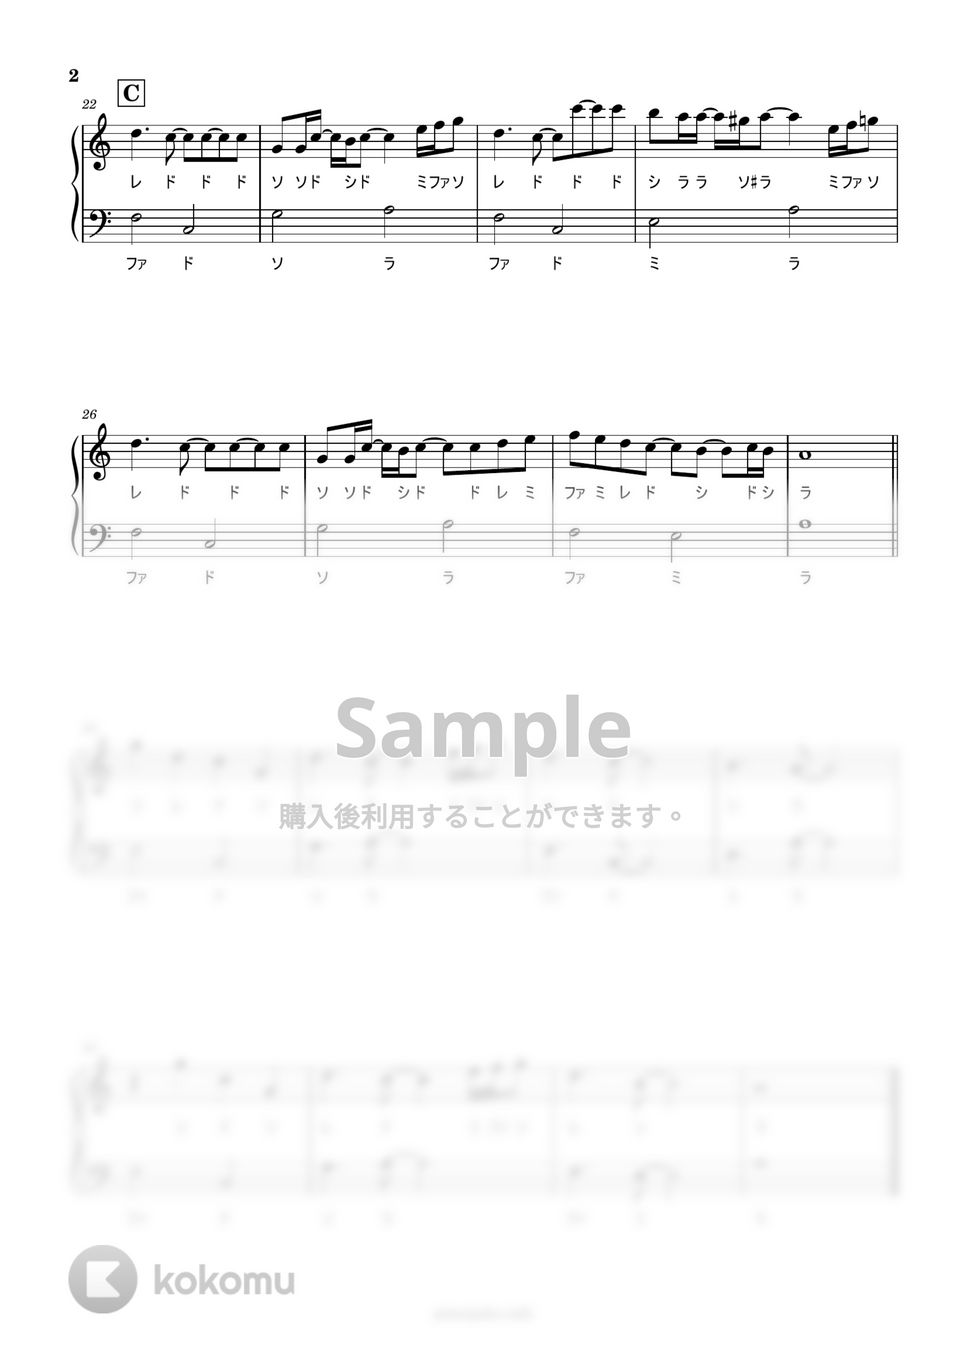 スピッツ - 美しい鰭 (ドレミ付き簡単楽譜) by ピアノ塾